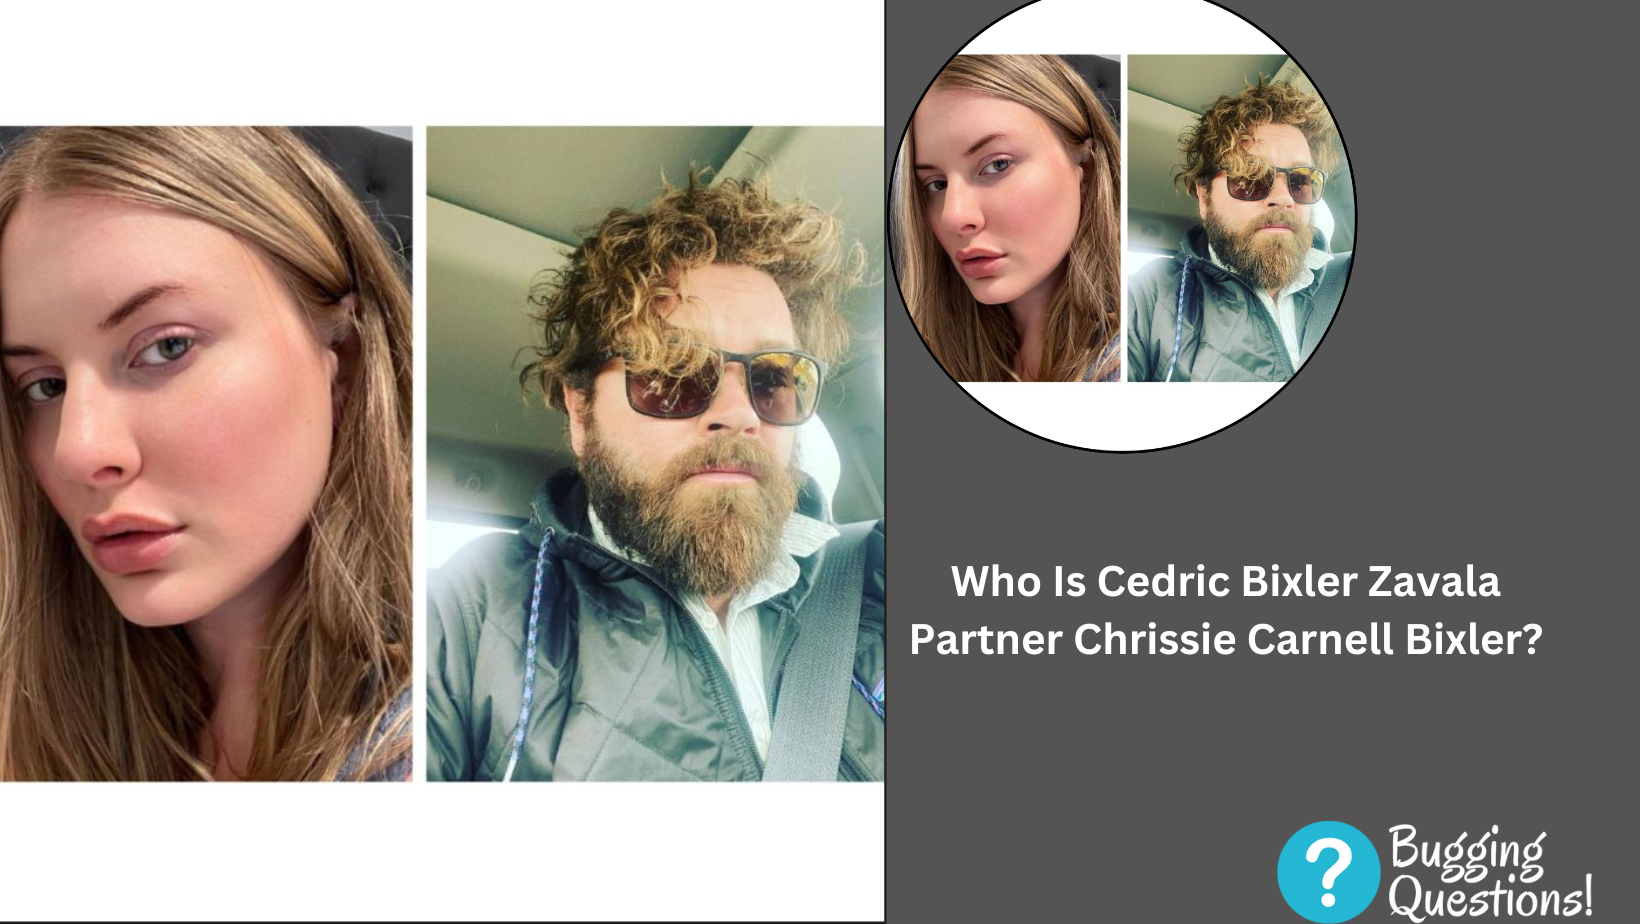 Who Is Cedric Bixler Zavala Partner Chrissie Carnell Bixler?